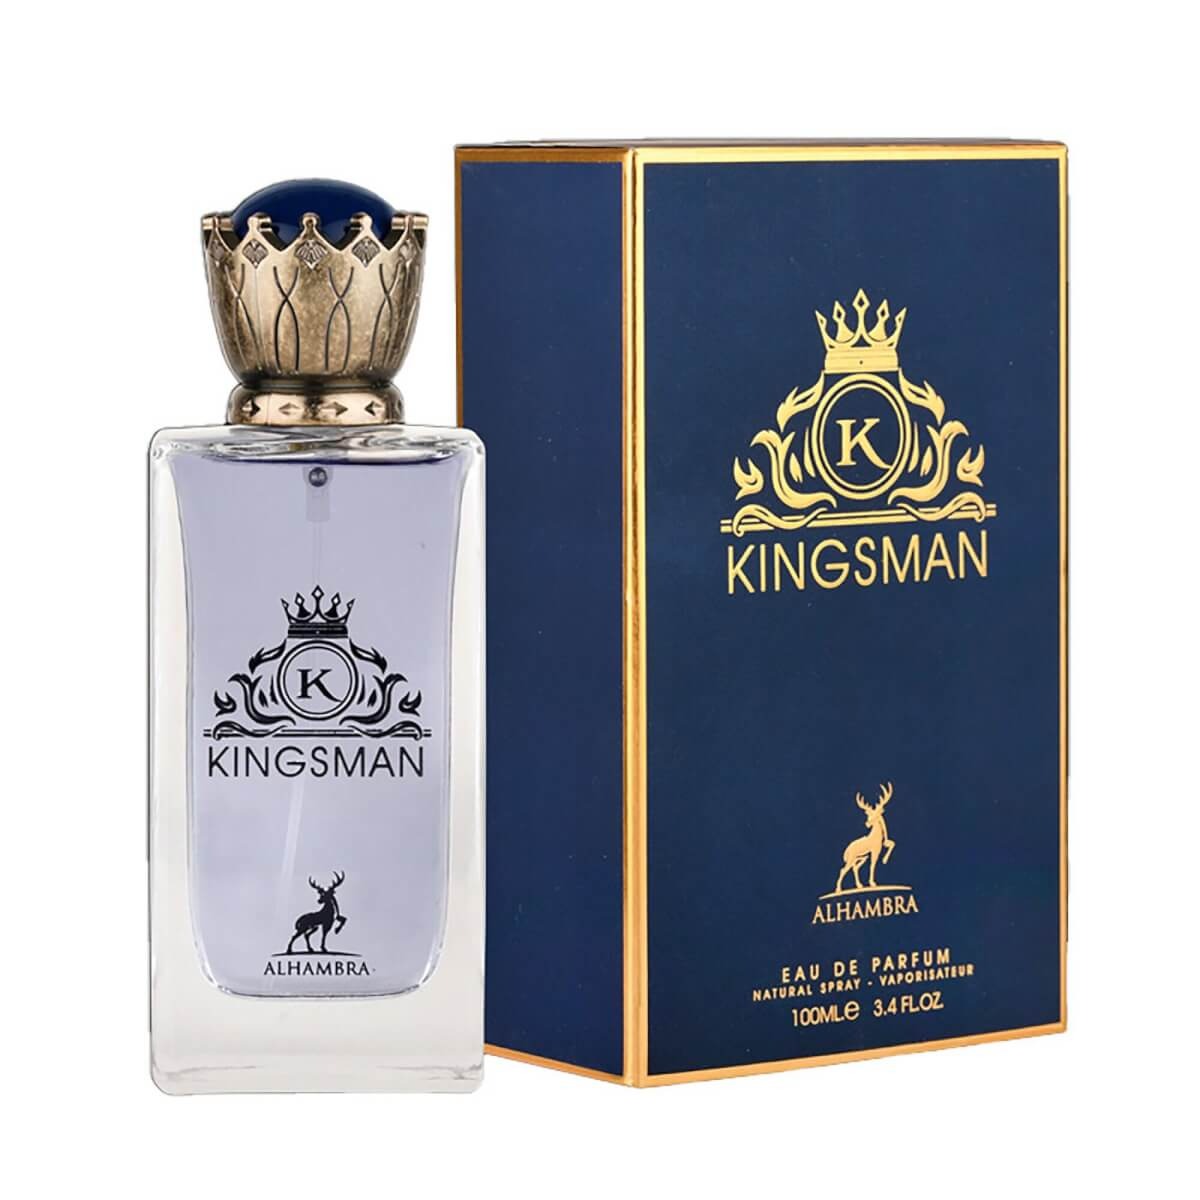 Kingsman Eau De Parfum 100ml Alhambra